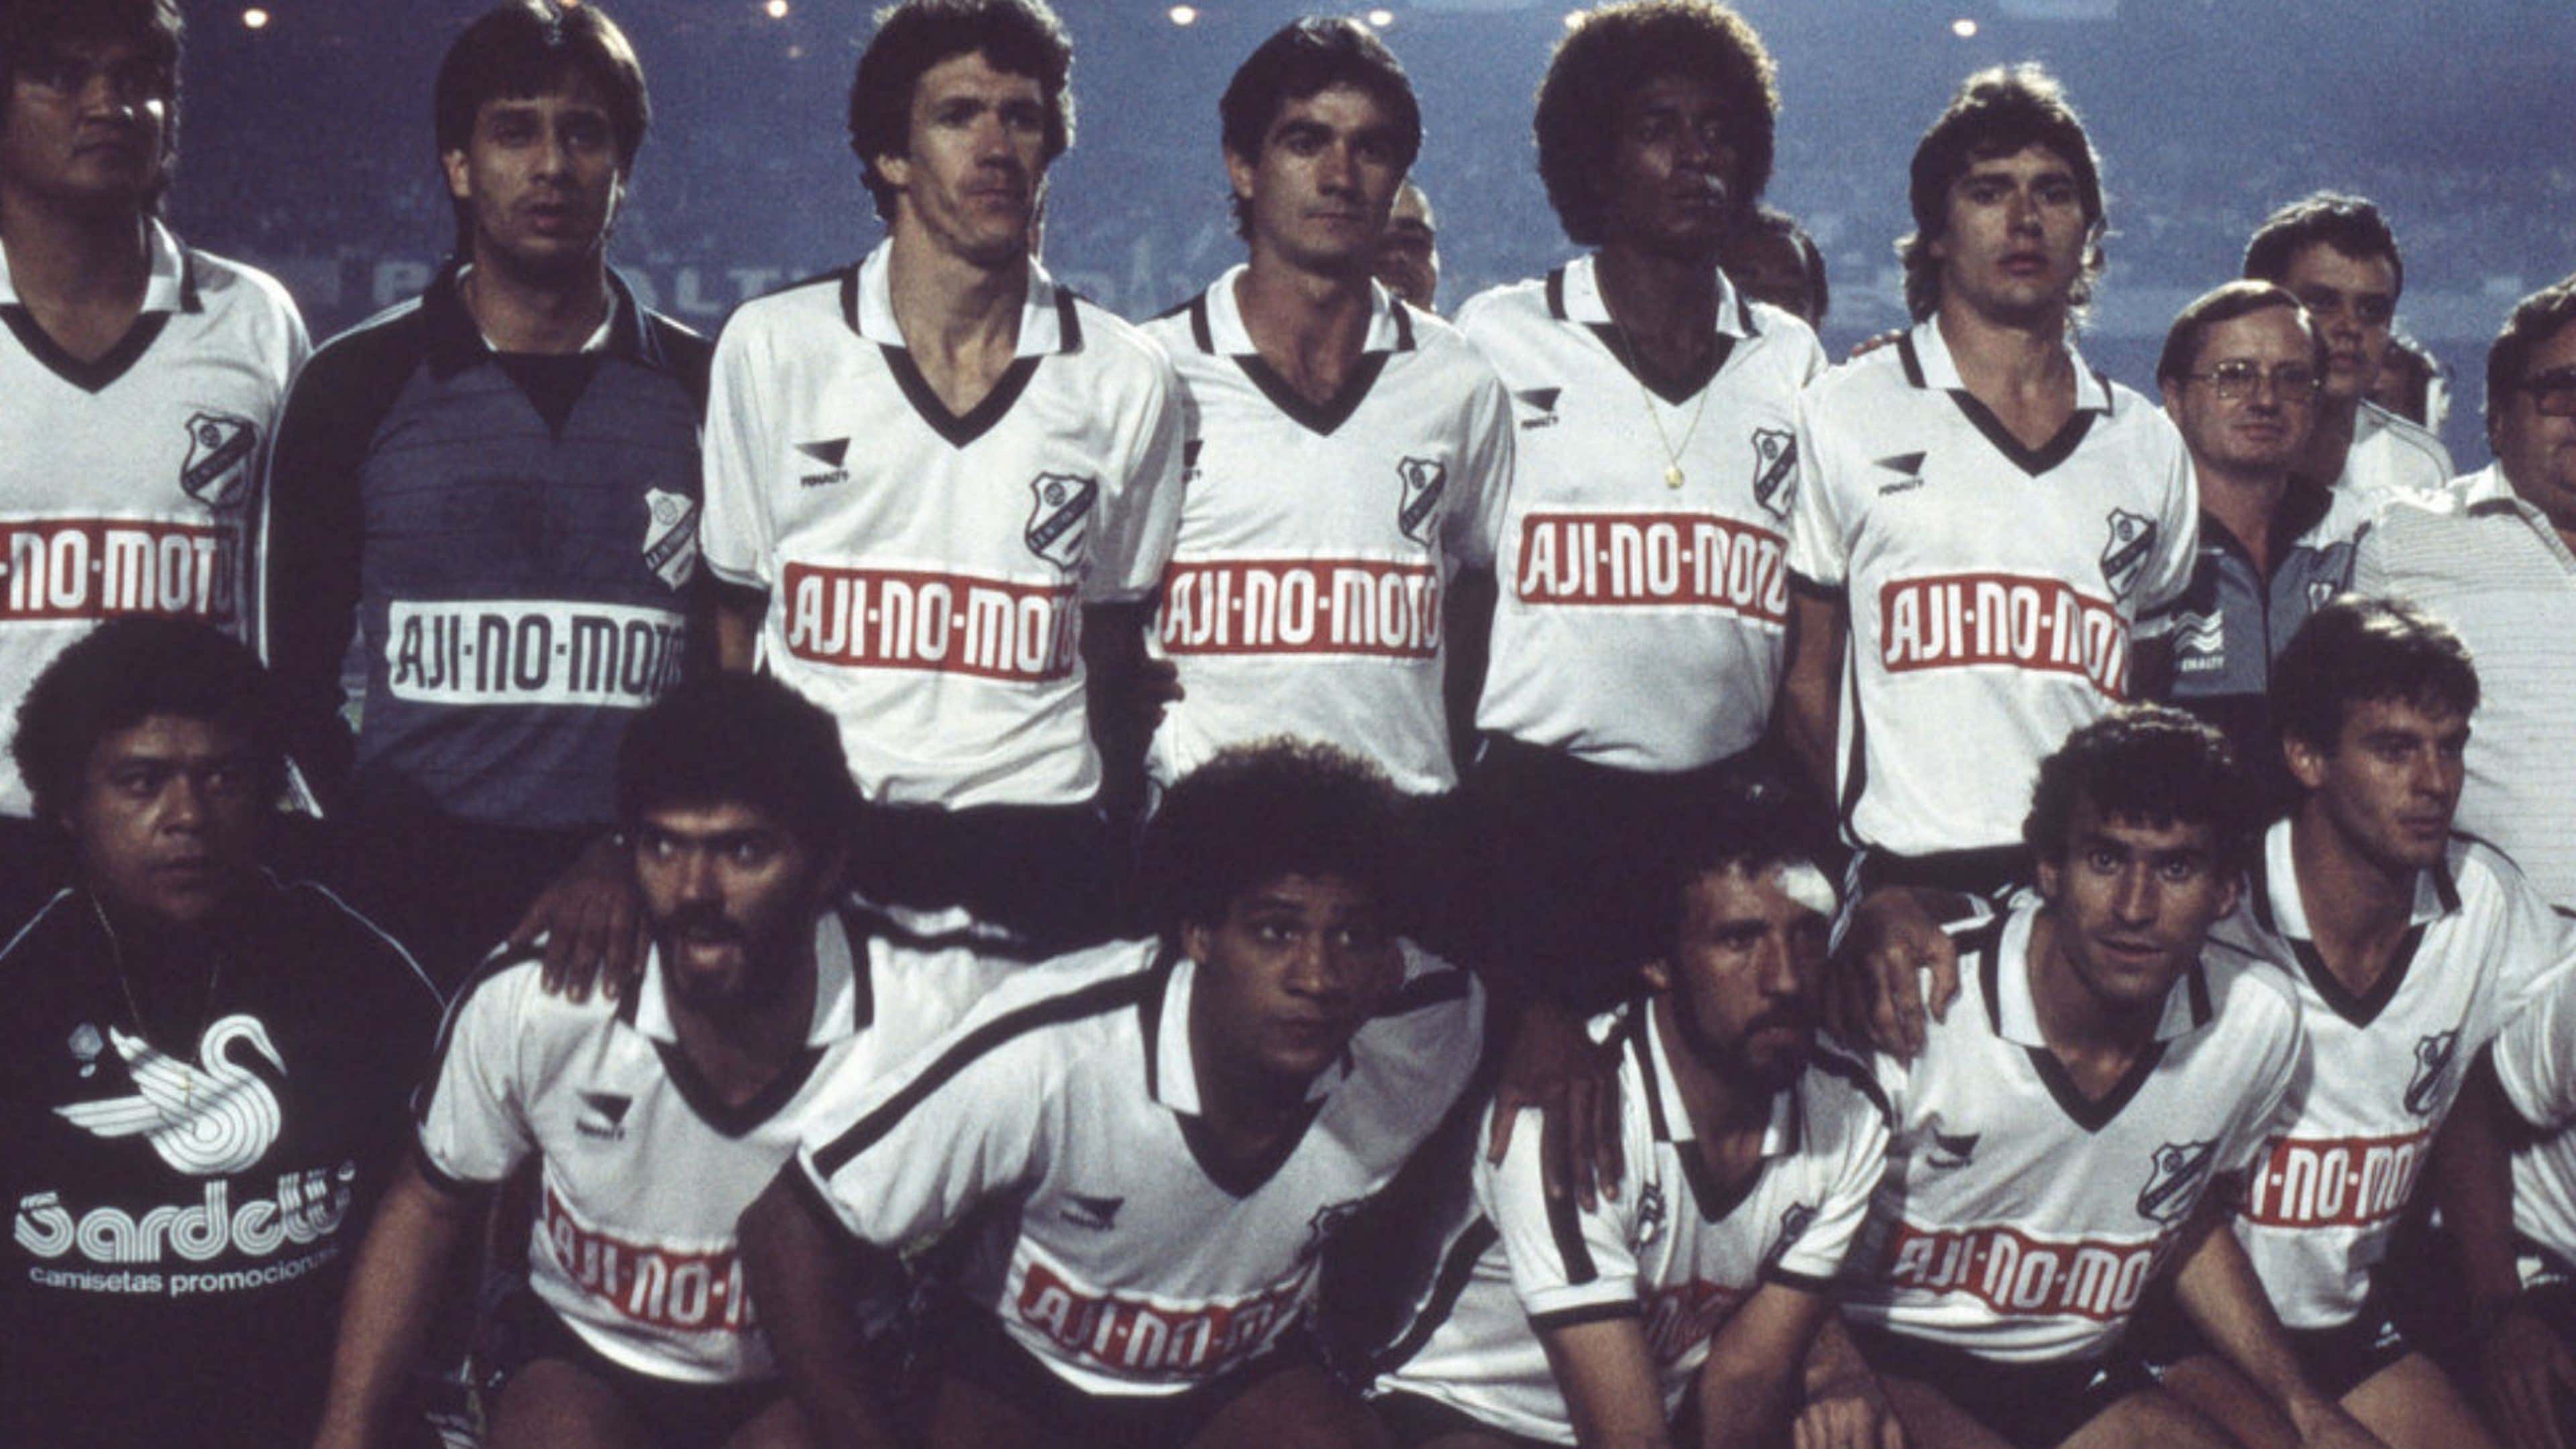 Todos os Campeões do Campeonato Paulista - (1902 a 2022) 